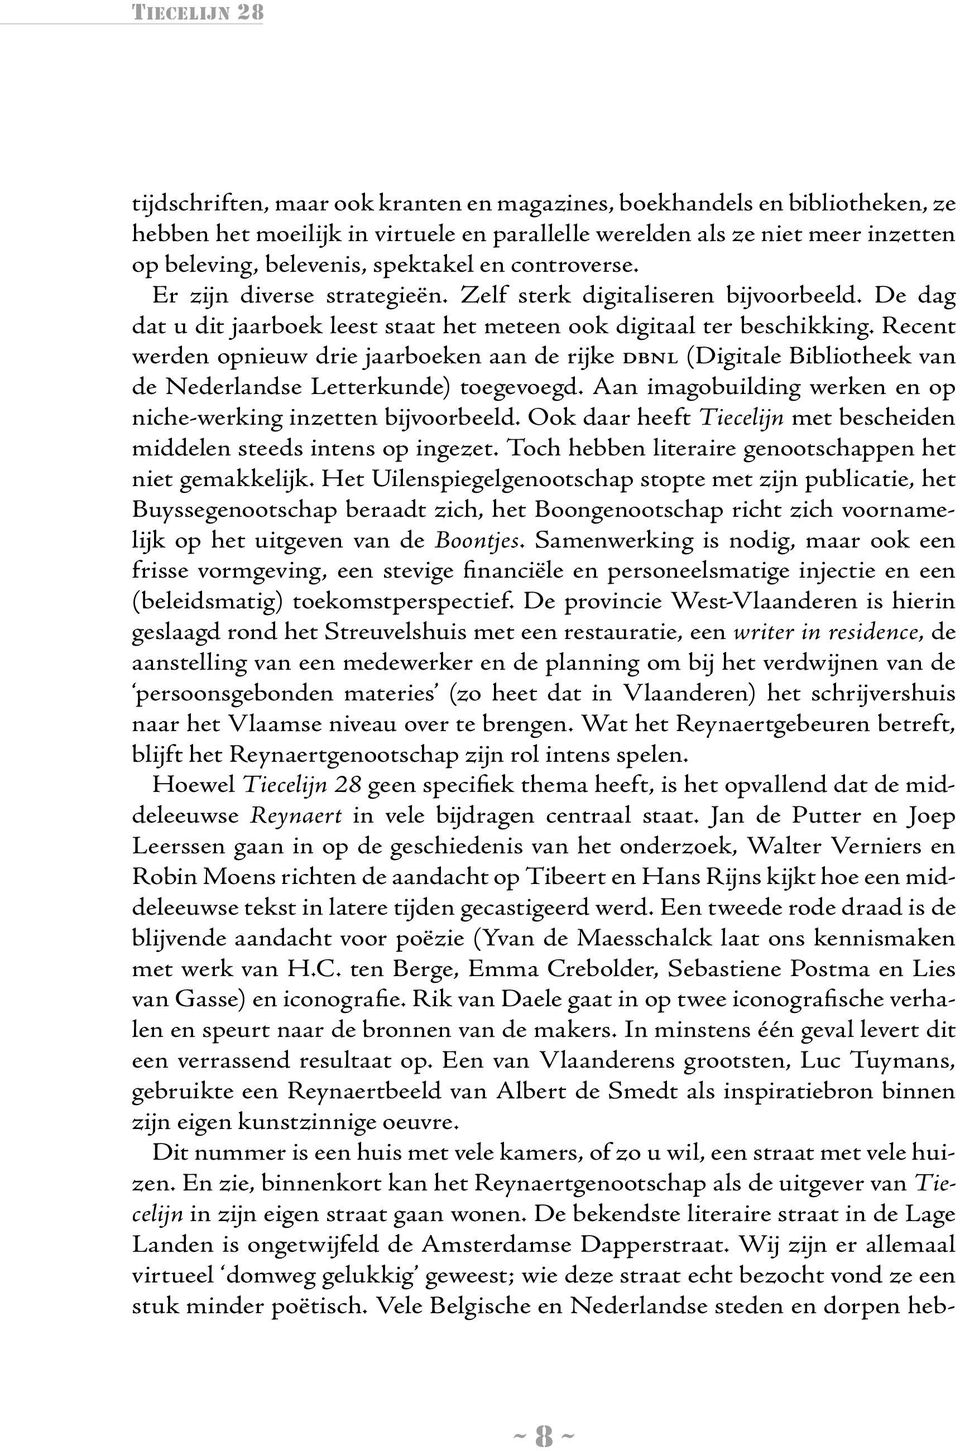 Recent werden opnieuw drie jaarboeken aan de rijke dbnl (Digitale Bibliotheek van de Nederlandse Letterkunde) toegevoegd. Aan imagobuilding werken en op niche-werking inzetten bijvoorbeeld.